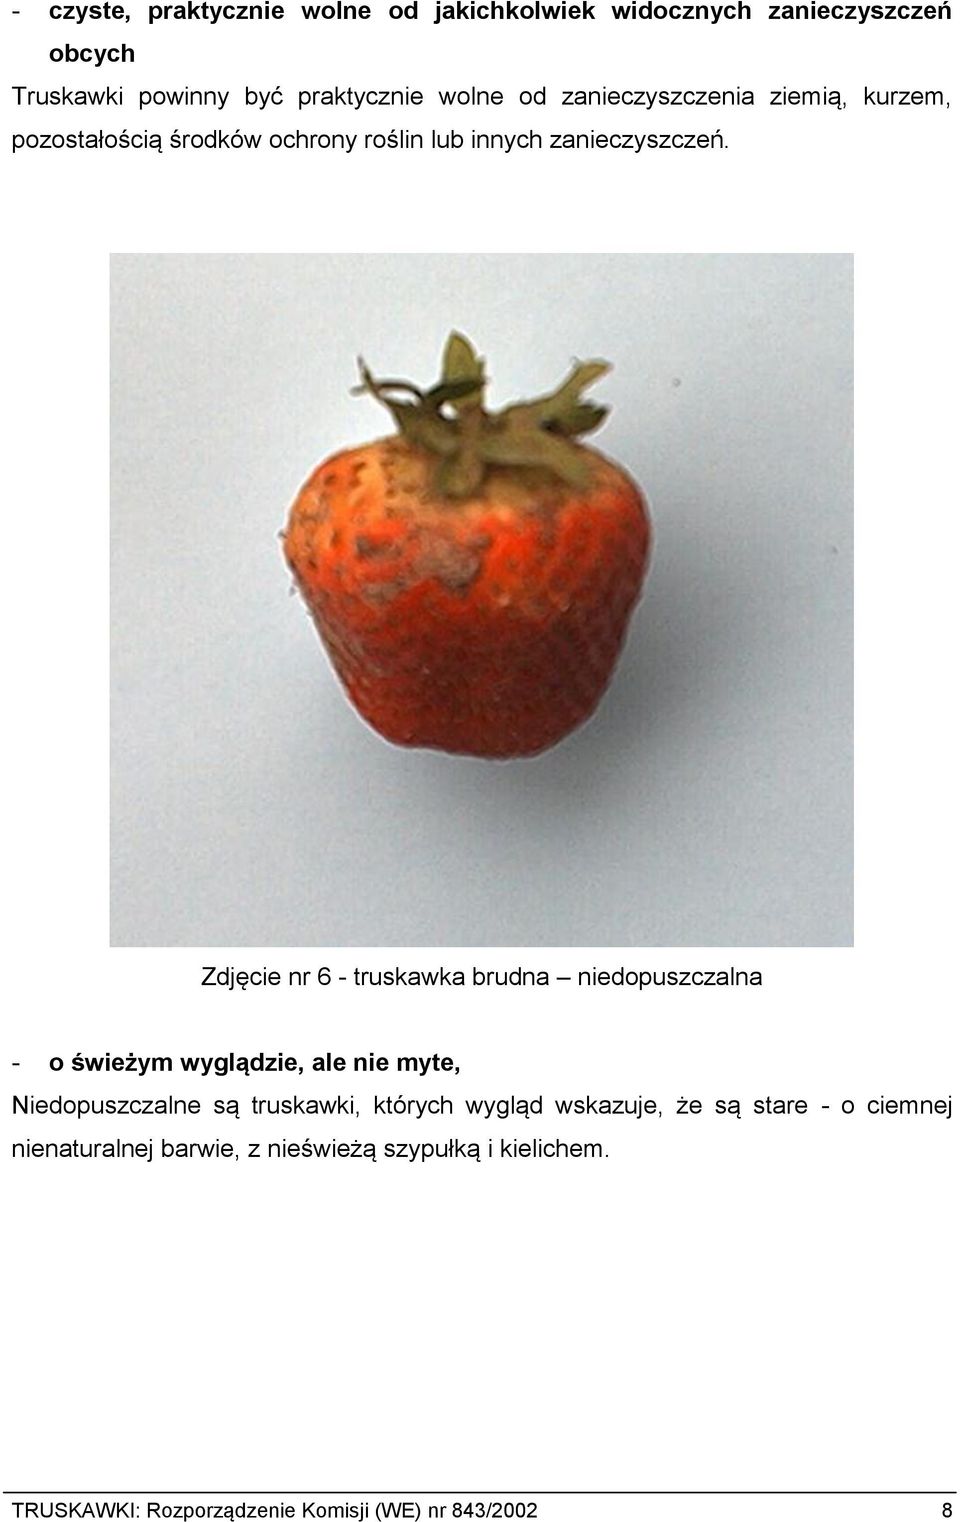 Zdjęcie nr 6 - truskawka brudna niedopuszczalna - o świeżym wyglądzie, ale nie myte, Niedopuszczalne są truskawki, których